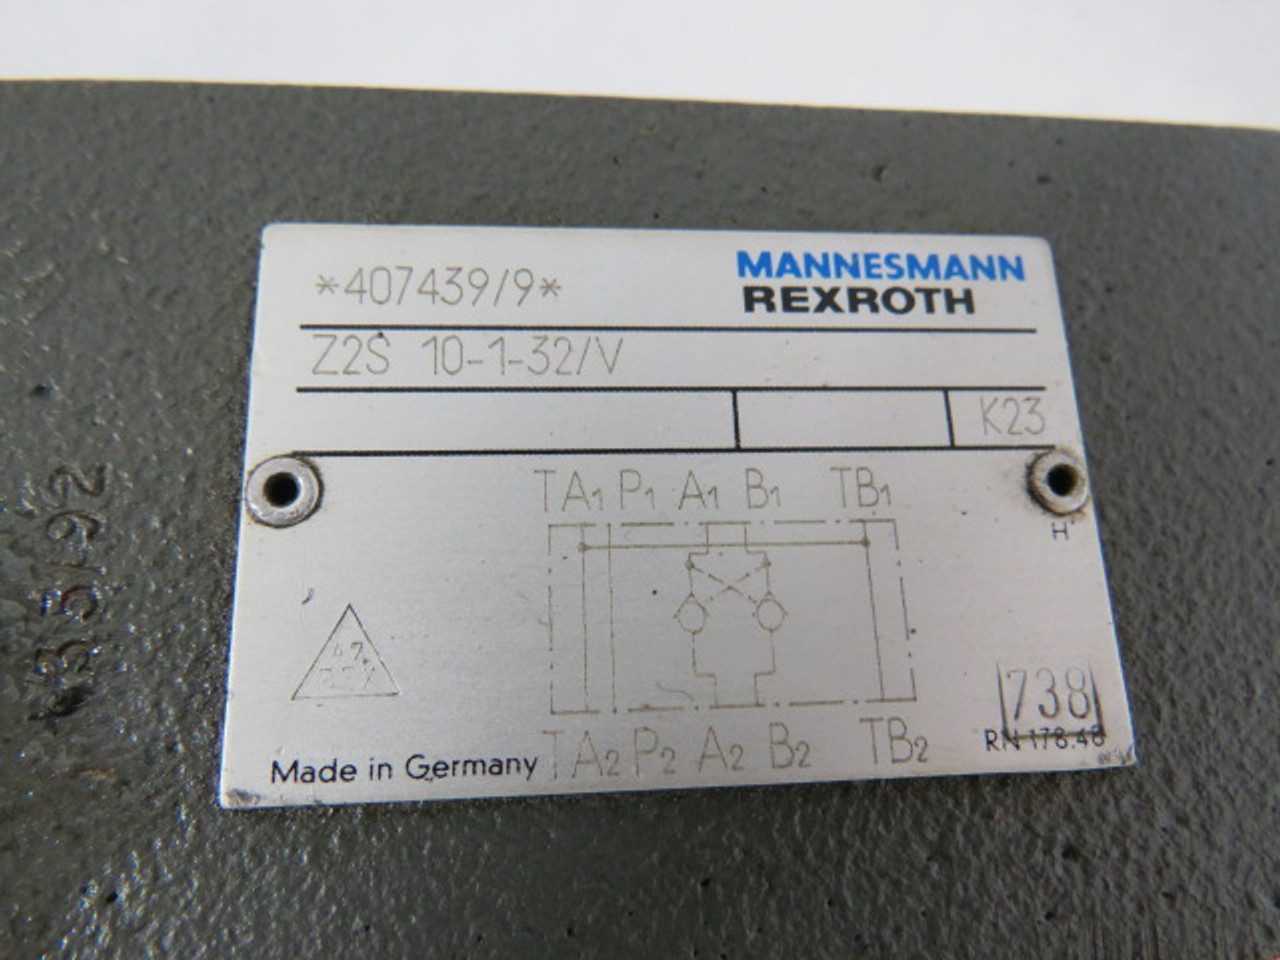 Rexroth 407439/9 Z2S-10-1-32/V Pilot Operator Check Valve 315PSI USED